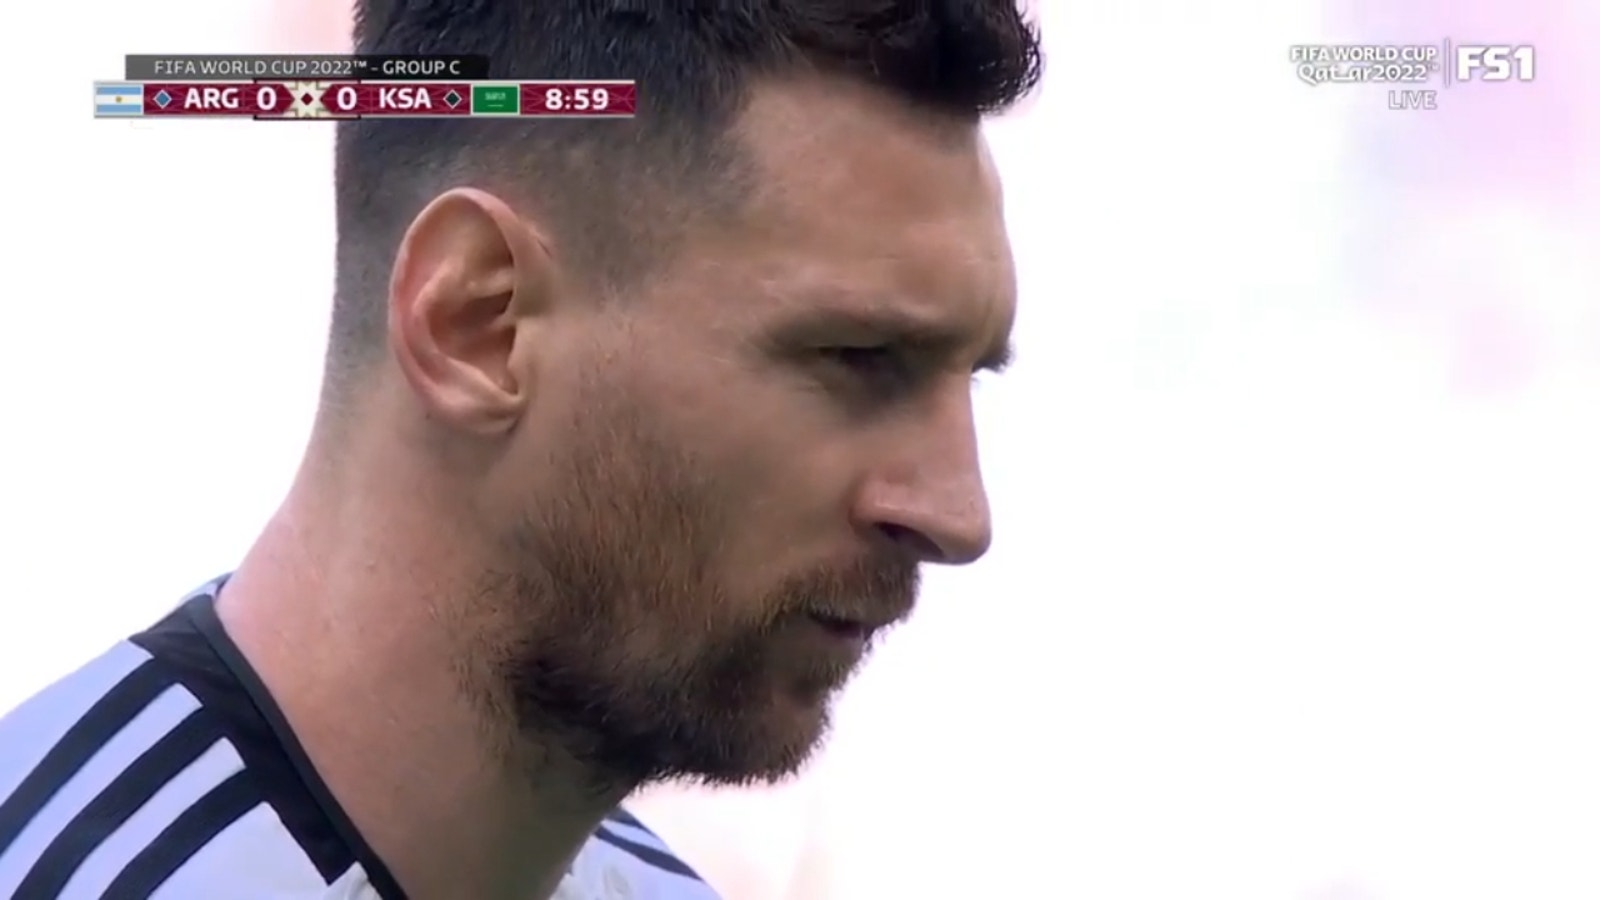 Lionel Messi erzielte in der 10. Minute einen Elfmeter zum 1:0-Vorsprung Argentiniens gegen Saudi-Arabien.